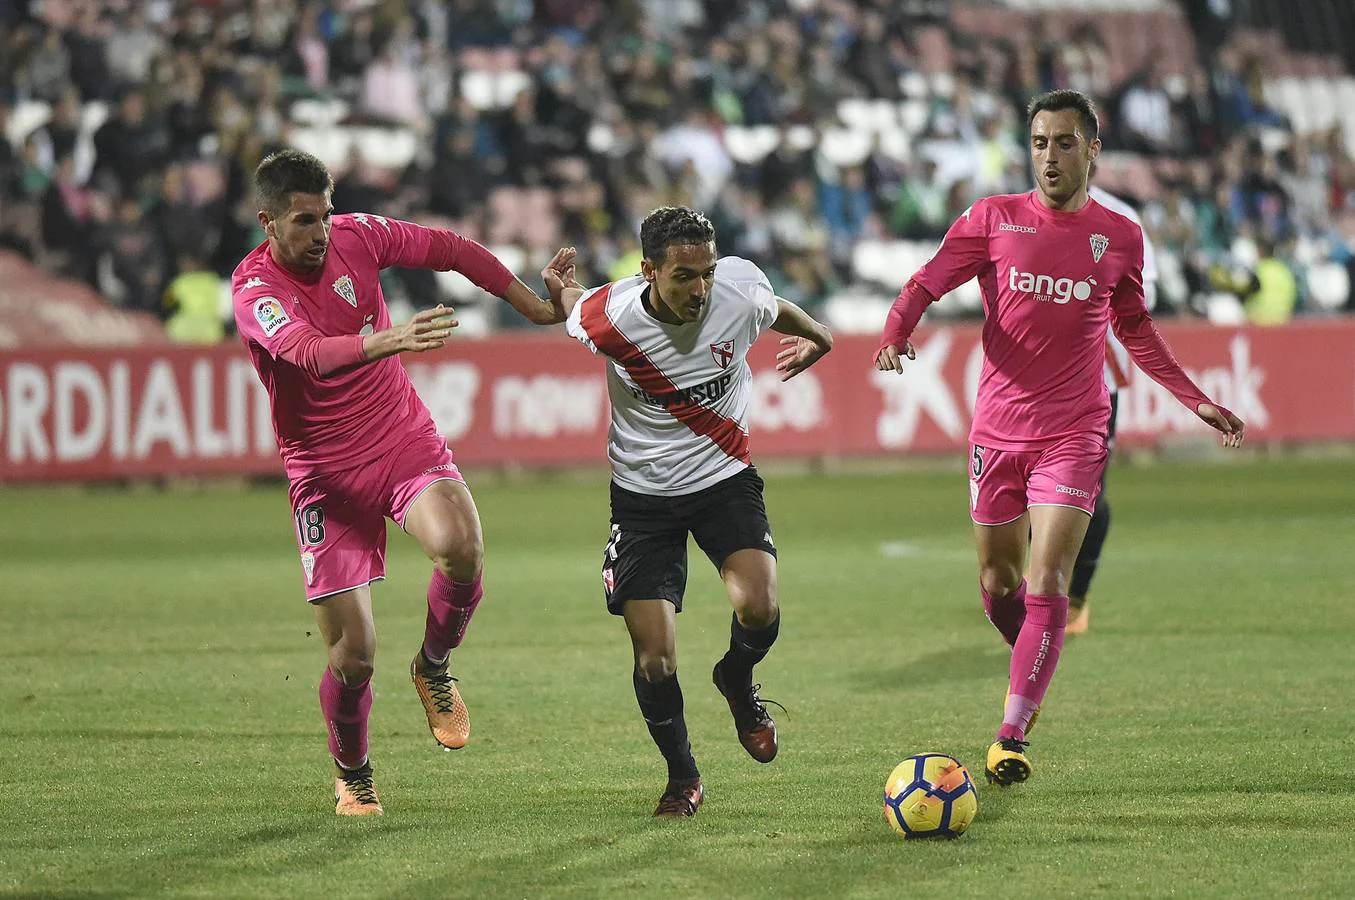 El Córdoba CF no levanta el vuelo ante el Sevilla Atlético ni con un jugador más (1-1)